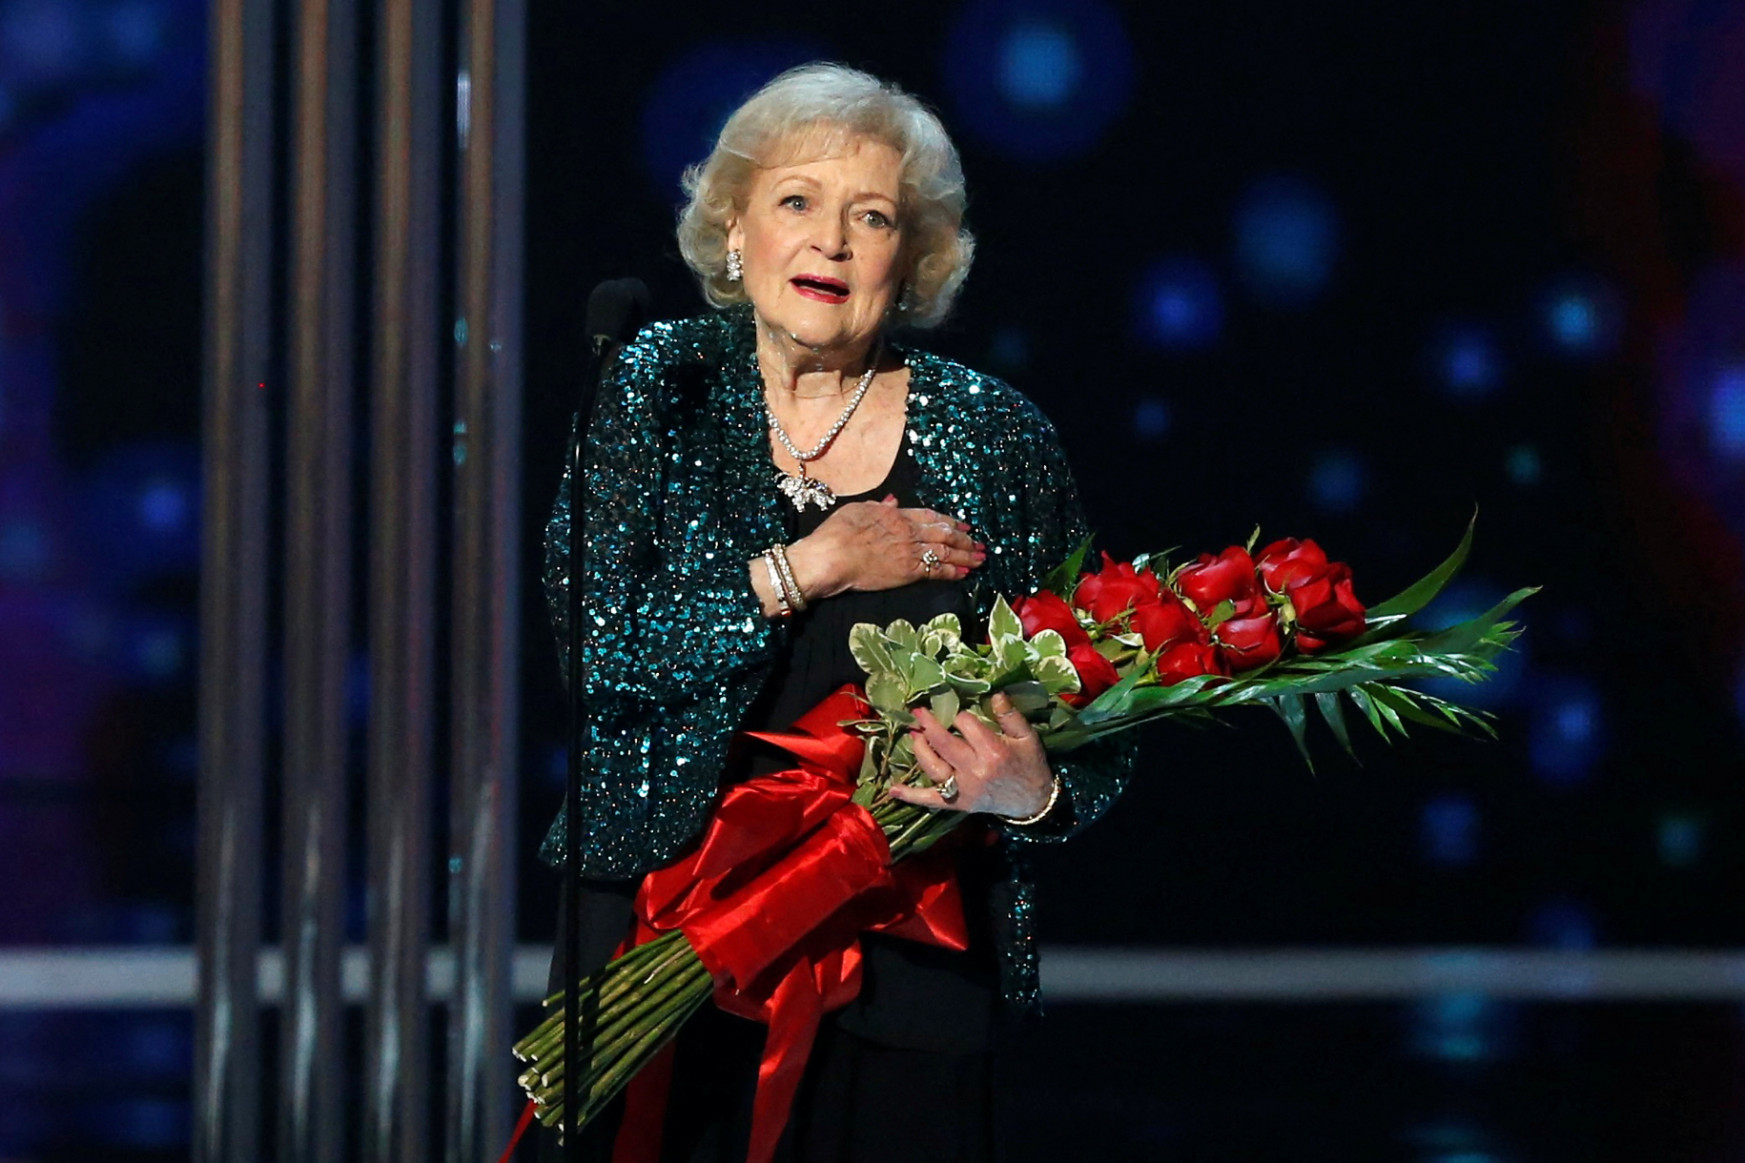 99 évesen meghalt a legendás tévésztár Betty White